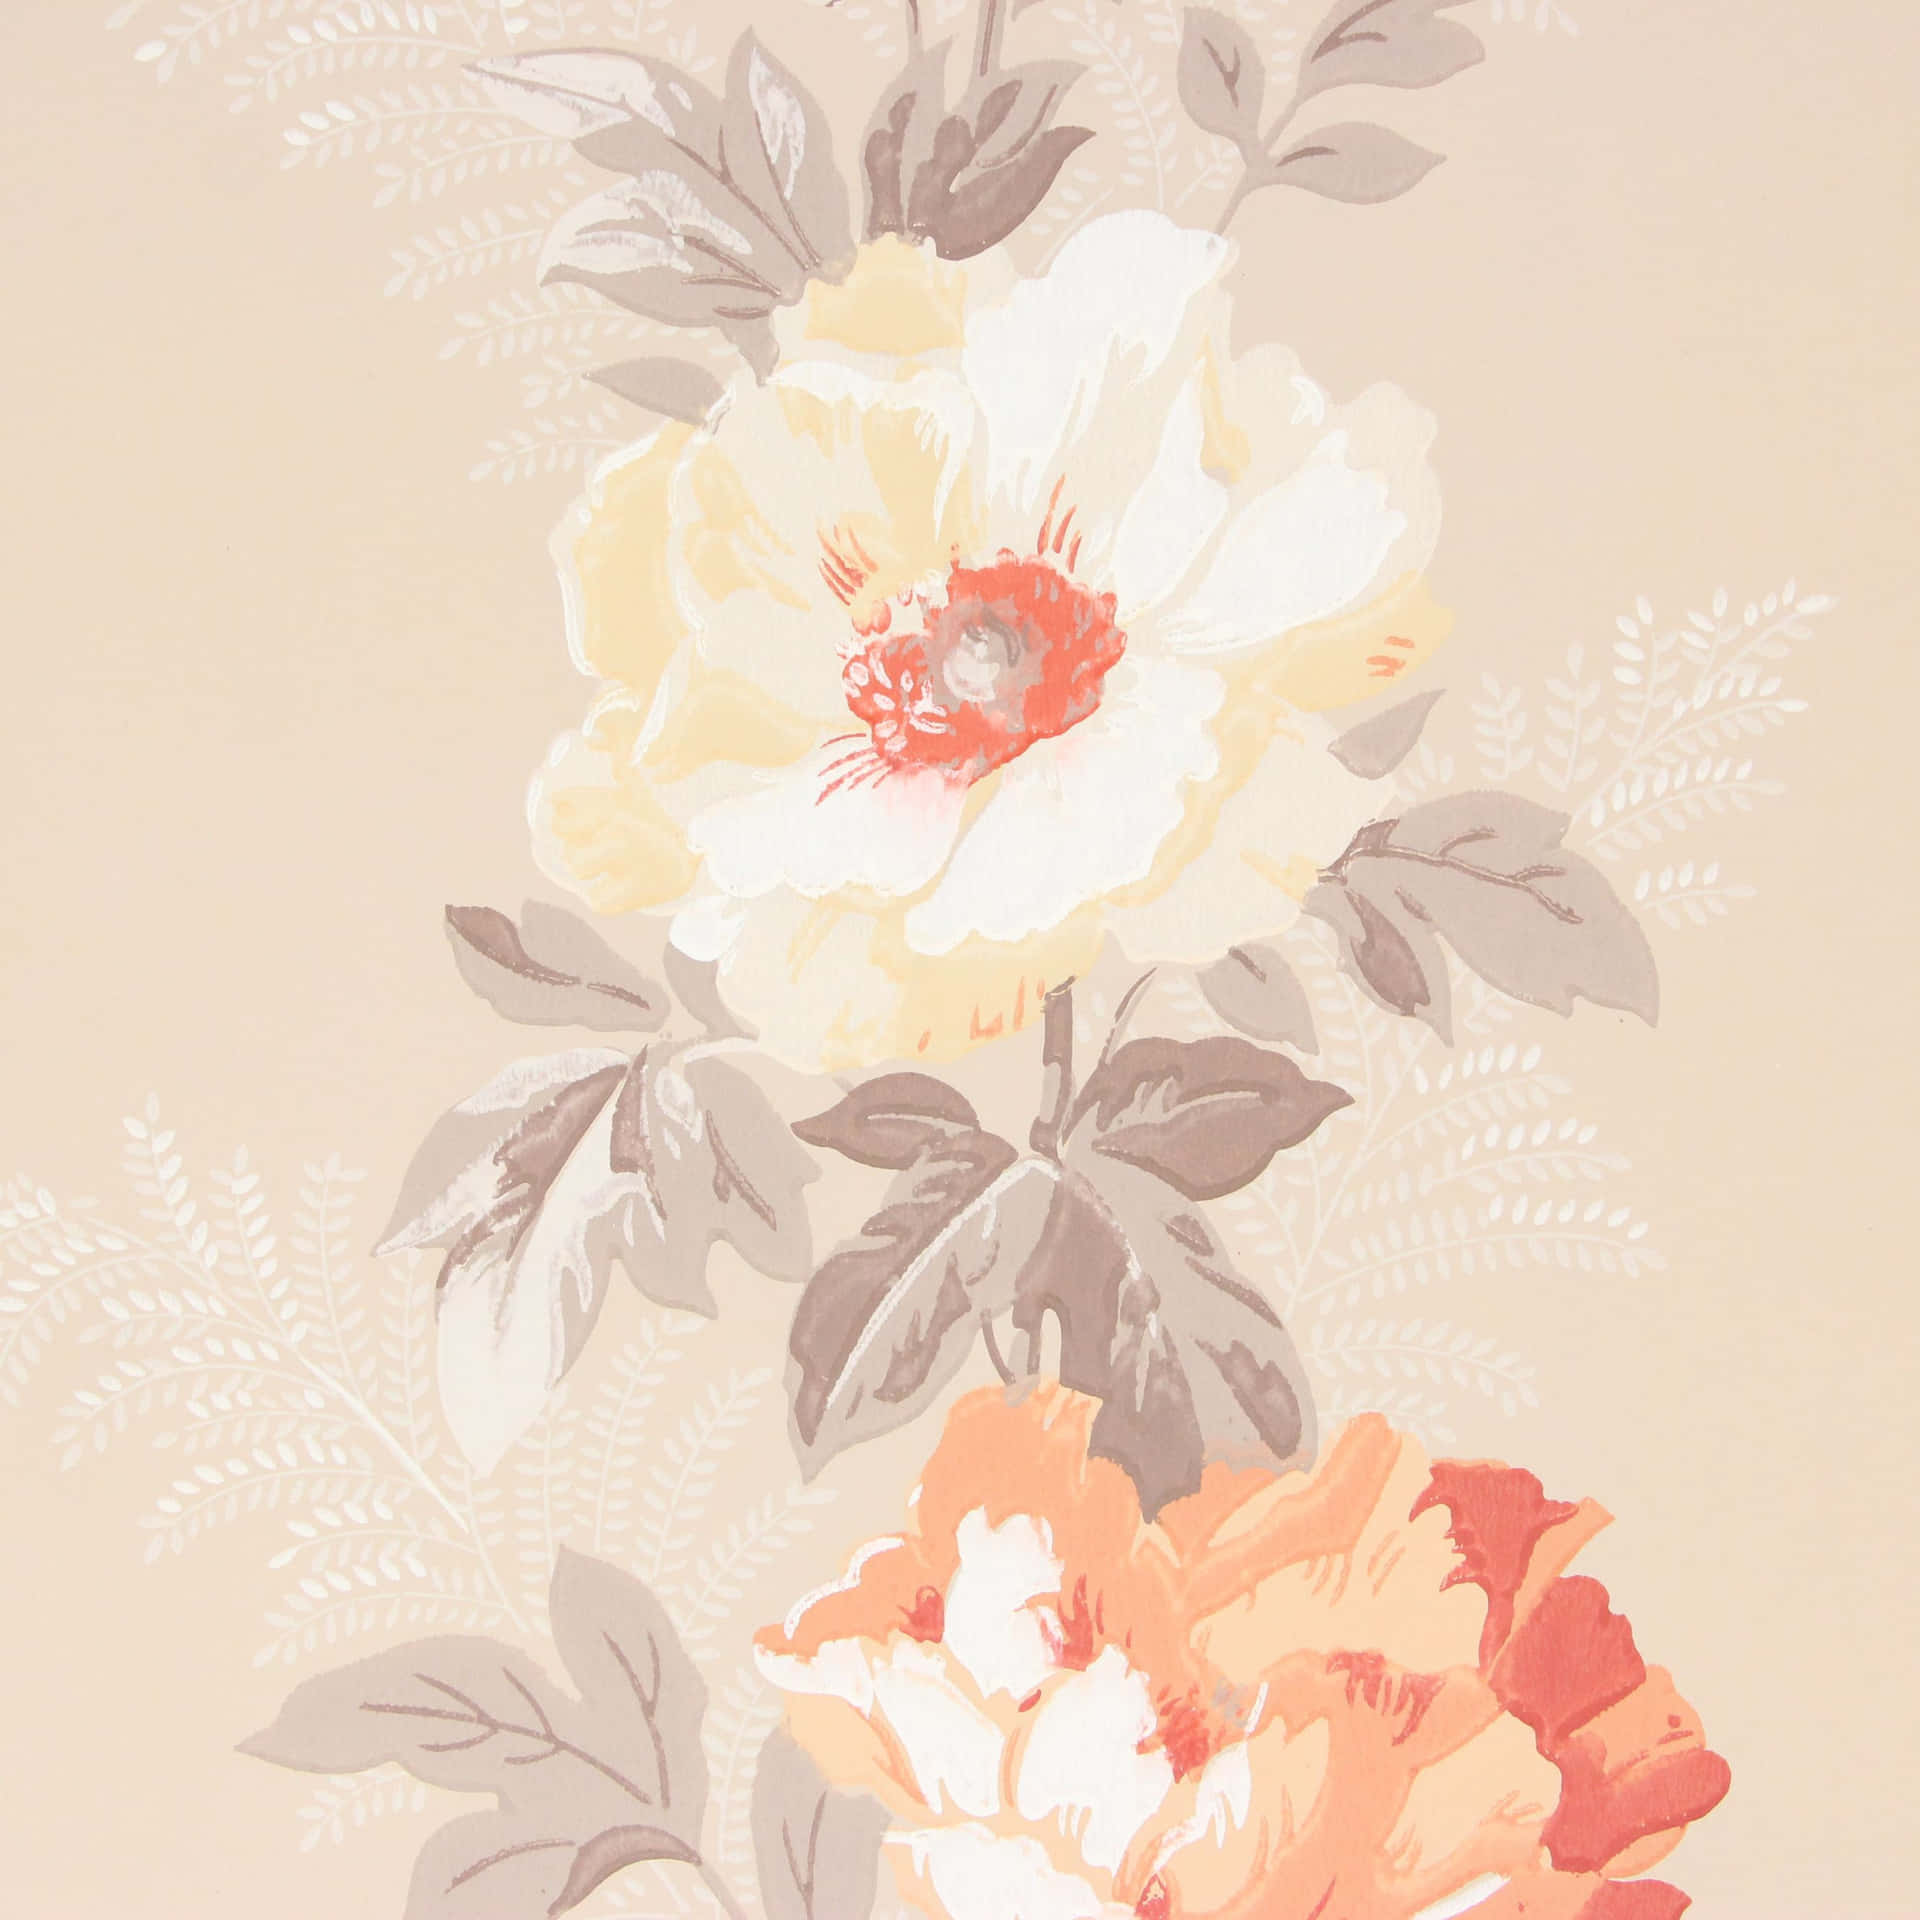 En livlig farvepalet af ferskener og appelsiner, med subtile antydninger af pink, rød og lilla. Wallpaper